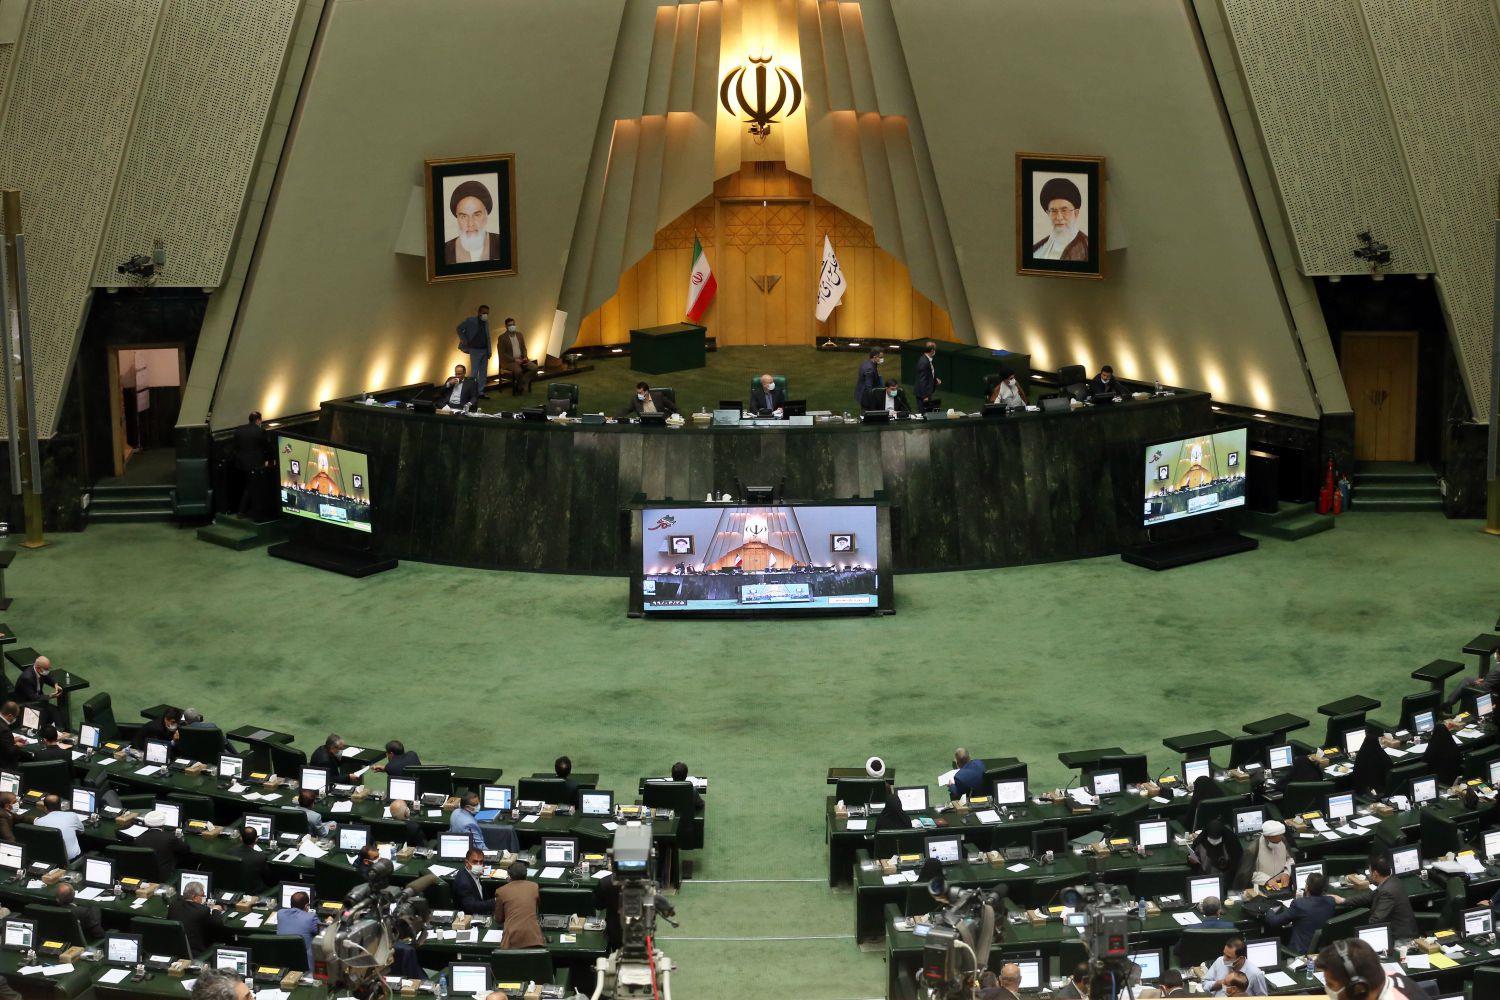 جنجال آفرینی نماینده شازند در مجلس/ نمایندگان آذری: صحن را ترک می کنیم